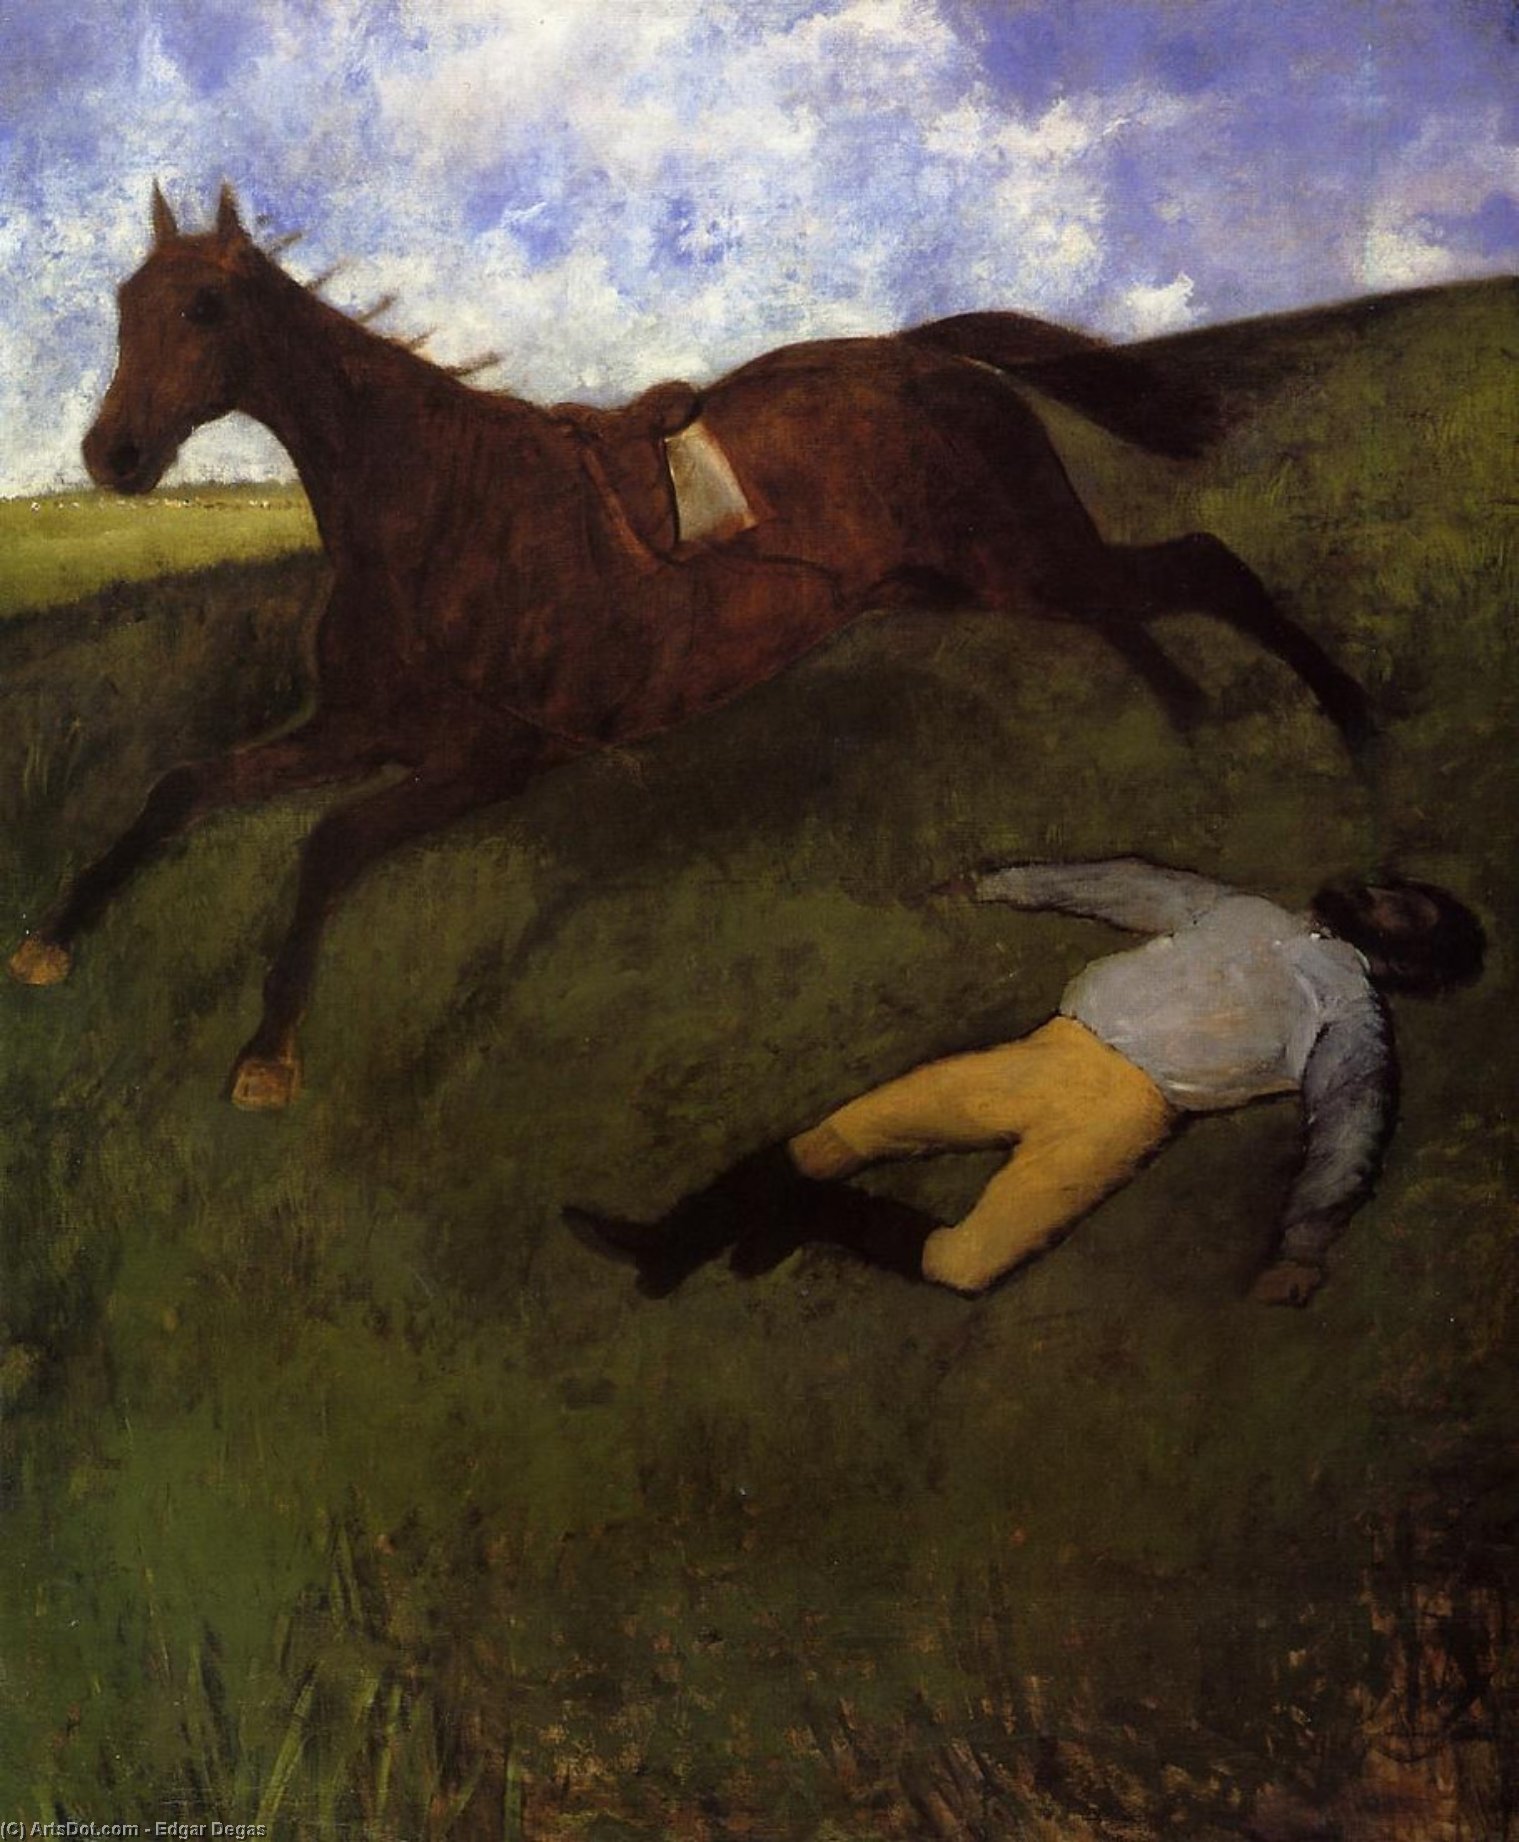 Wikioo.org - The Encyclopedia of Fine Arts - Painting, Artwork by Edgar Degas - The Fallen Jockey (also known as Fallen Jockey)